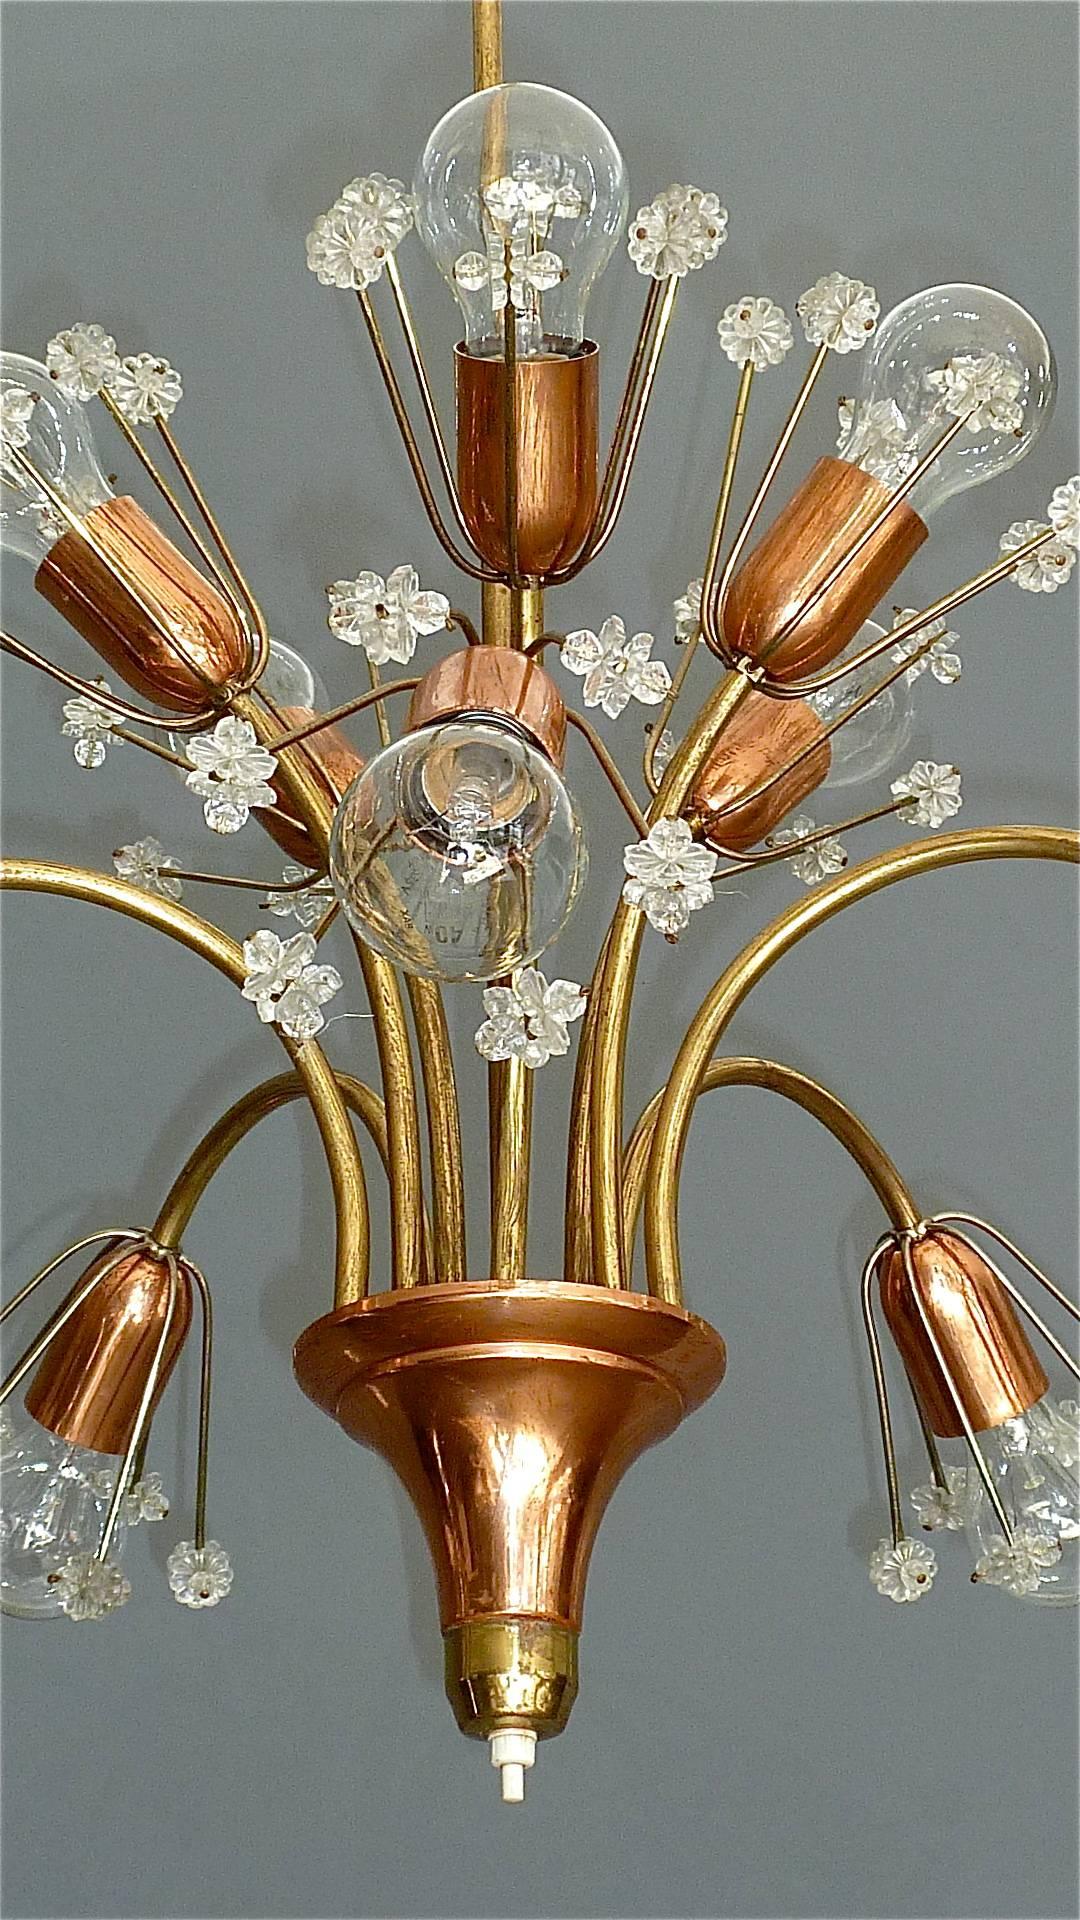 Beau et rare lustre ou lampe à suspension en forme de bouquet de fleurs par Emil Stejnar pour Rupert Nikoll, Vienne, Autriche. Une pièce originale du milieu du siècle dernier, fabriquée vers 1950. Elle est réalisée en laiton, en cuivre avec une